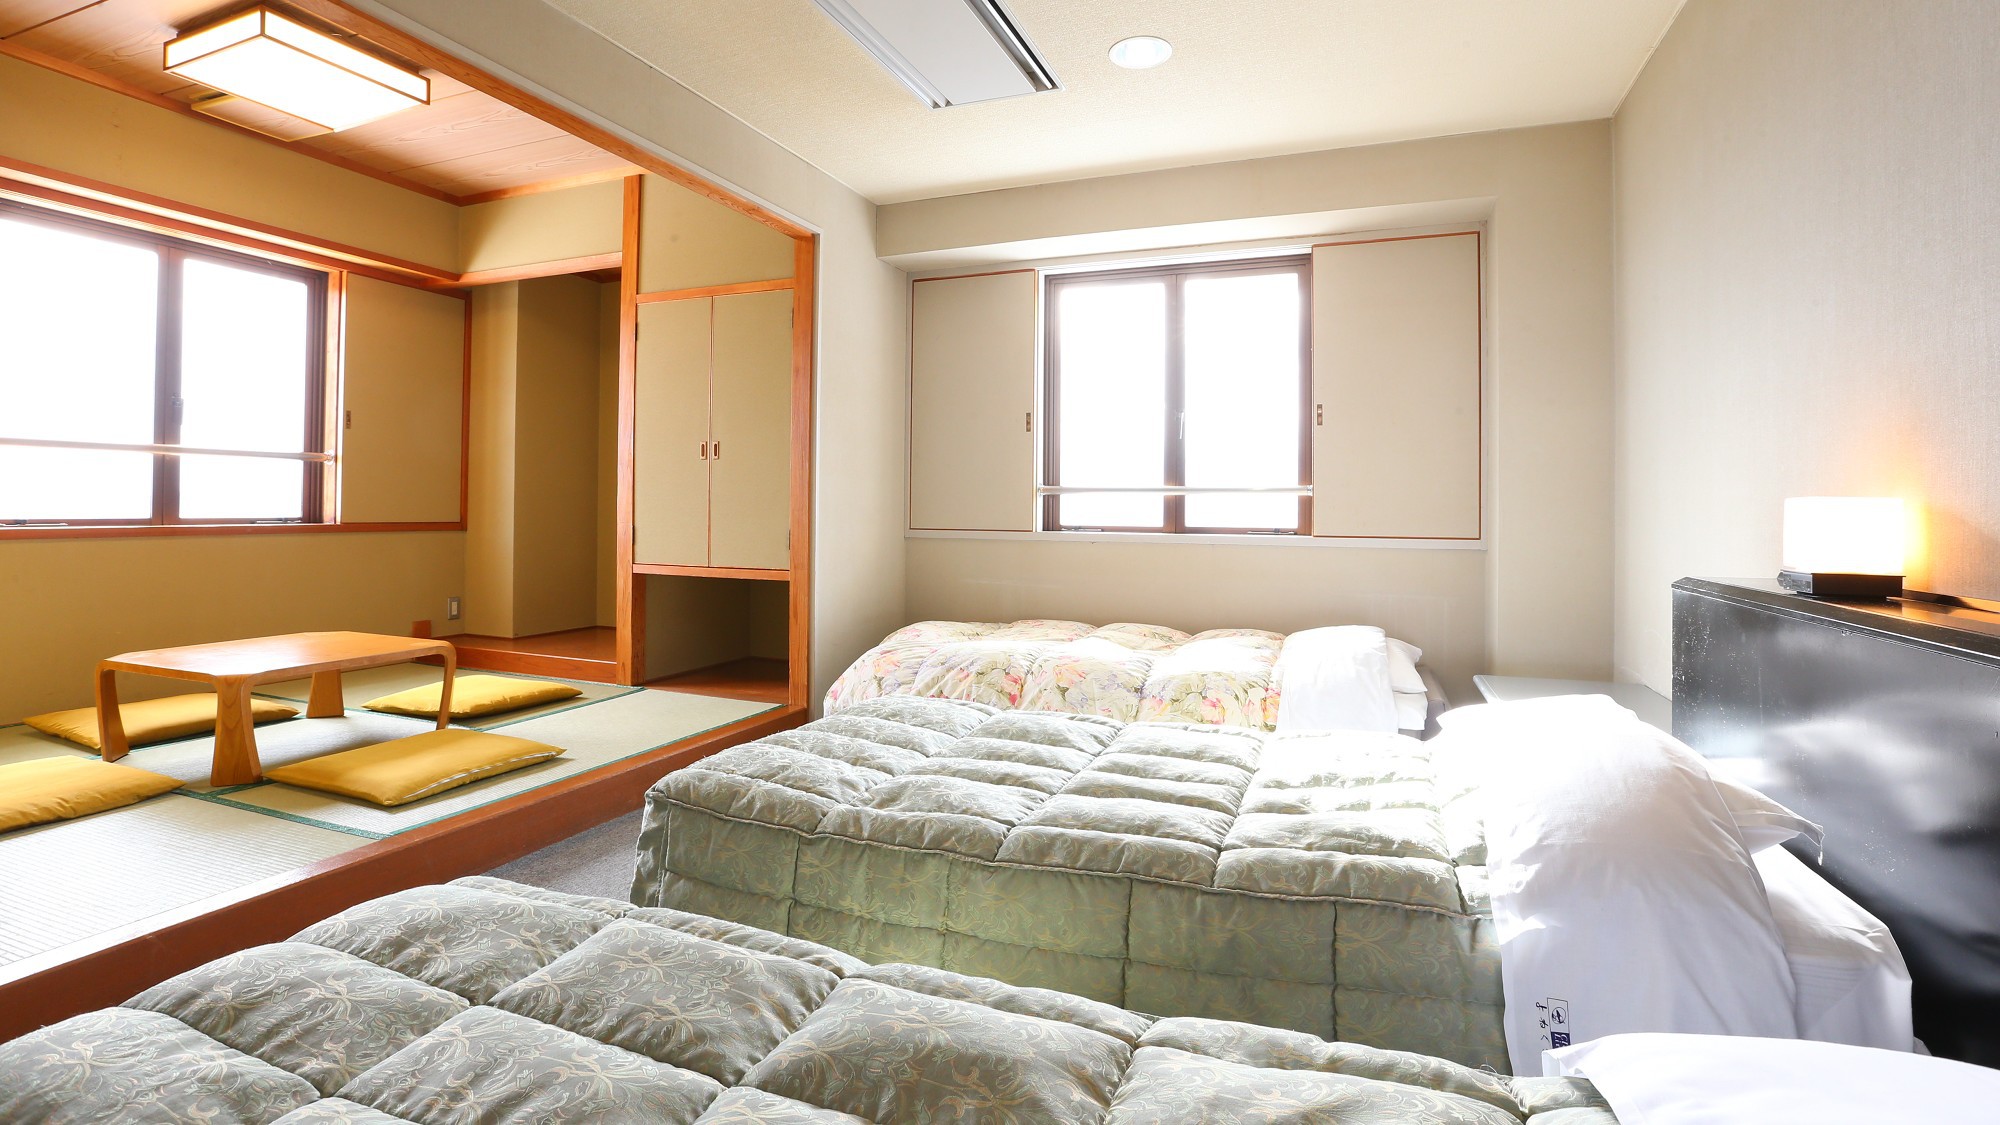 ■【本館・和洋室29平米】のお部屋です。ソファベッドもご用意しております。